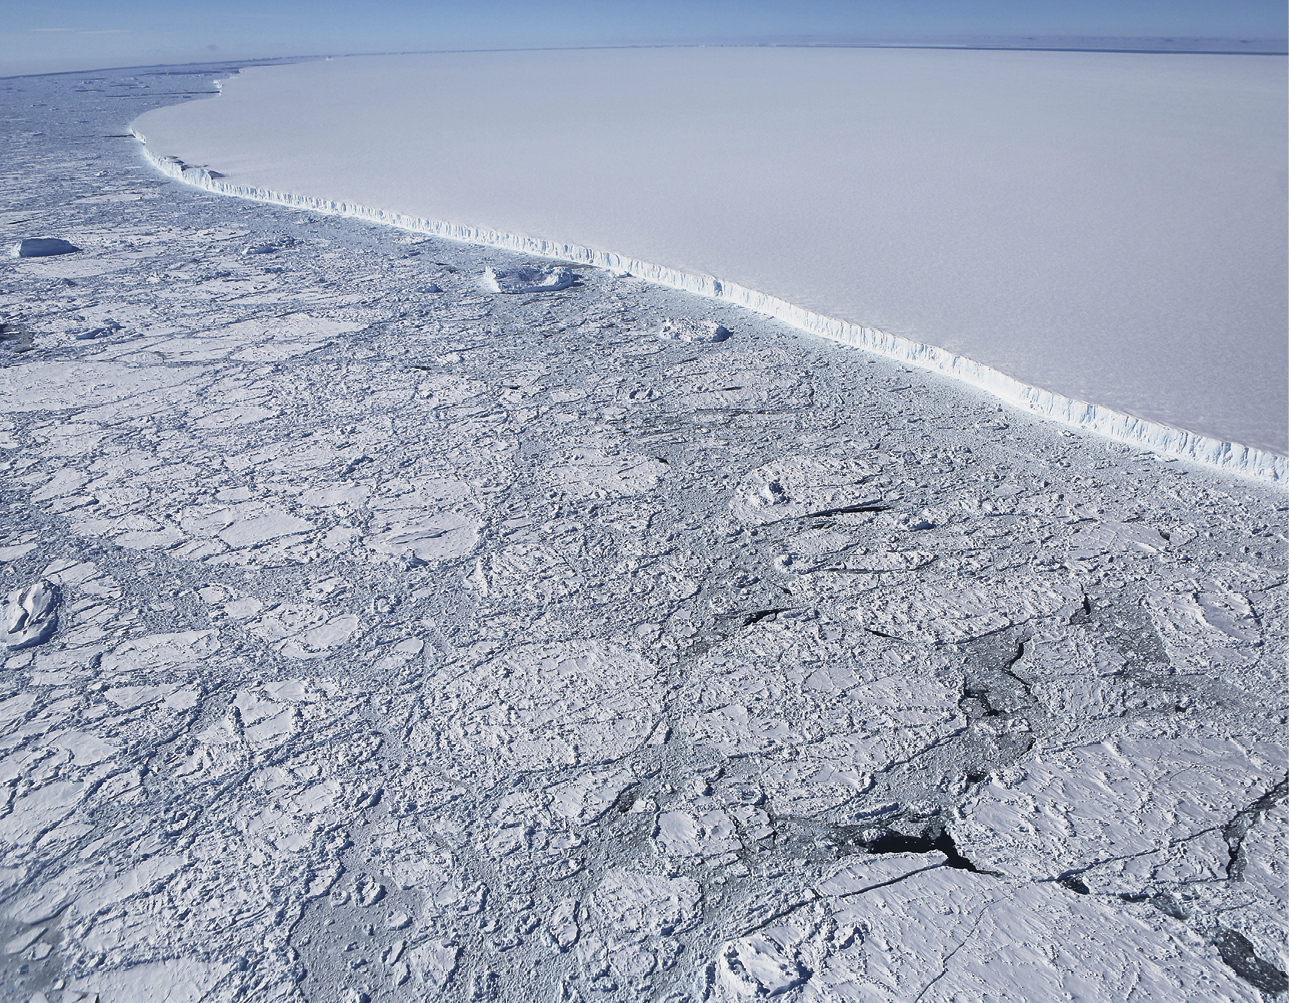 Fotografia. 
Vista aérea de extensa área de mar co placas de gelo flutuando e um grande iceberg de superfície plana e borda escarpada.